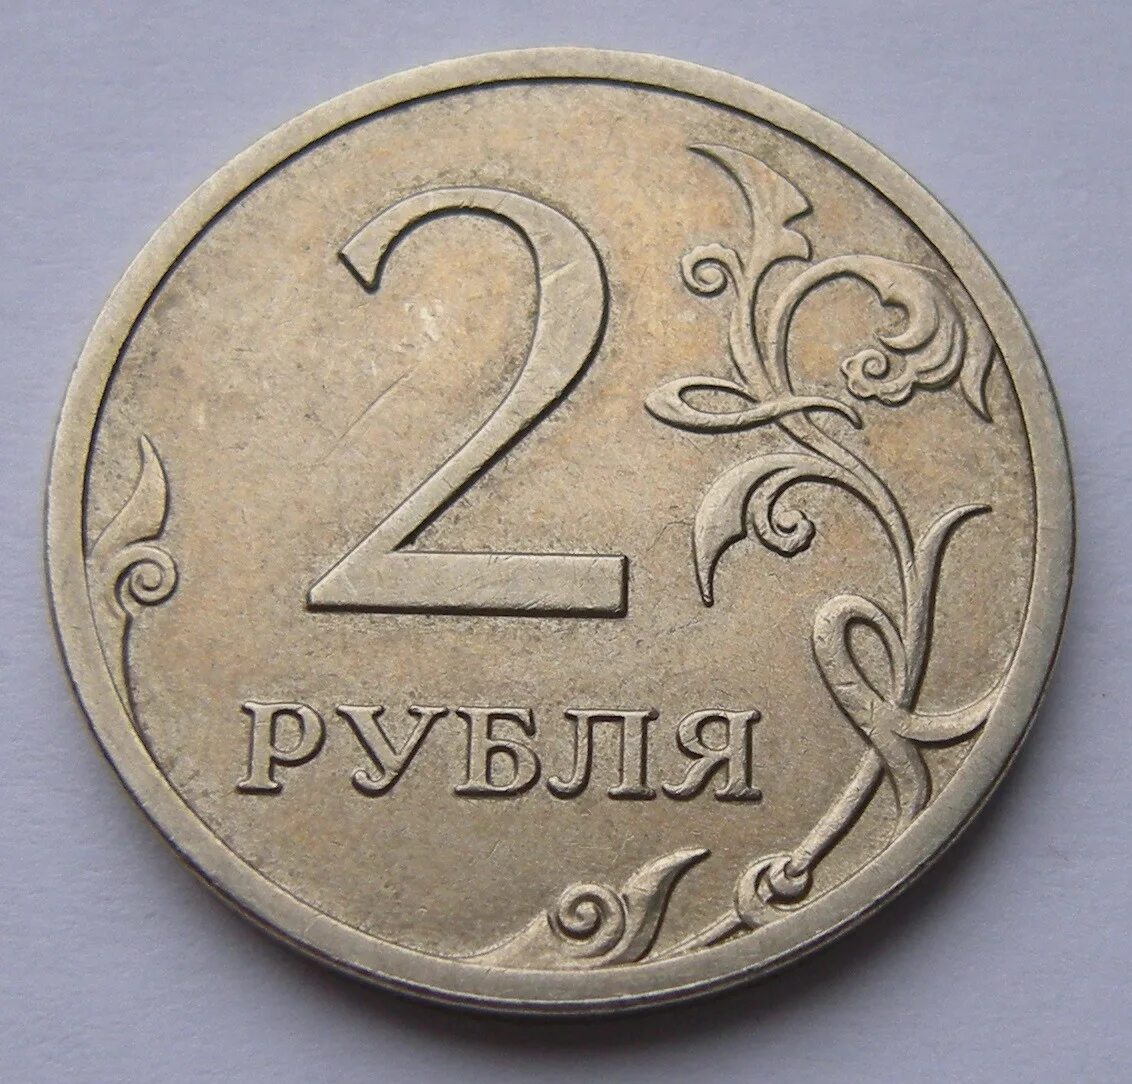 Рублей без 1 рубля. Монета 2 рубля. Монеты 1 2 5 рублей. Изображение монет. Монеты 1 руб 2 руб.